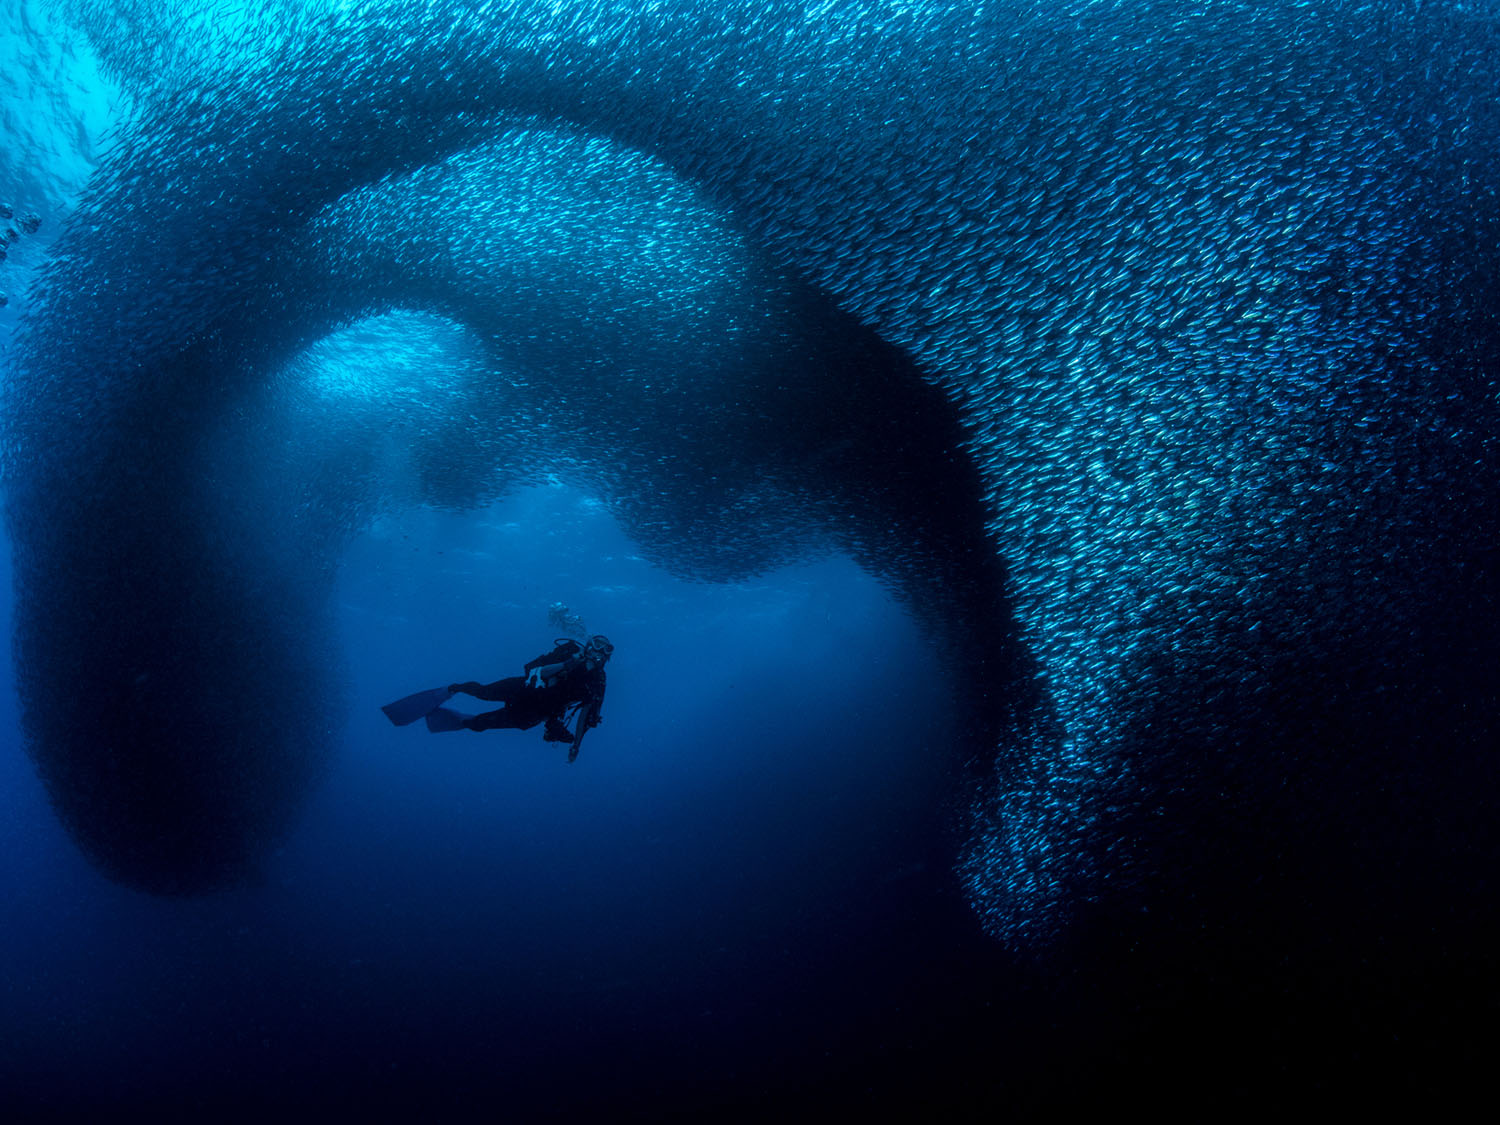 underwater ocean pictures